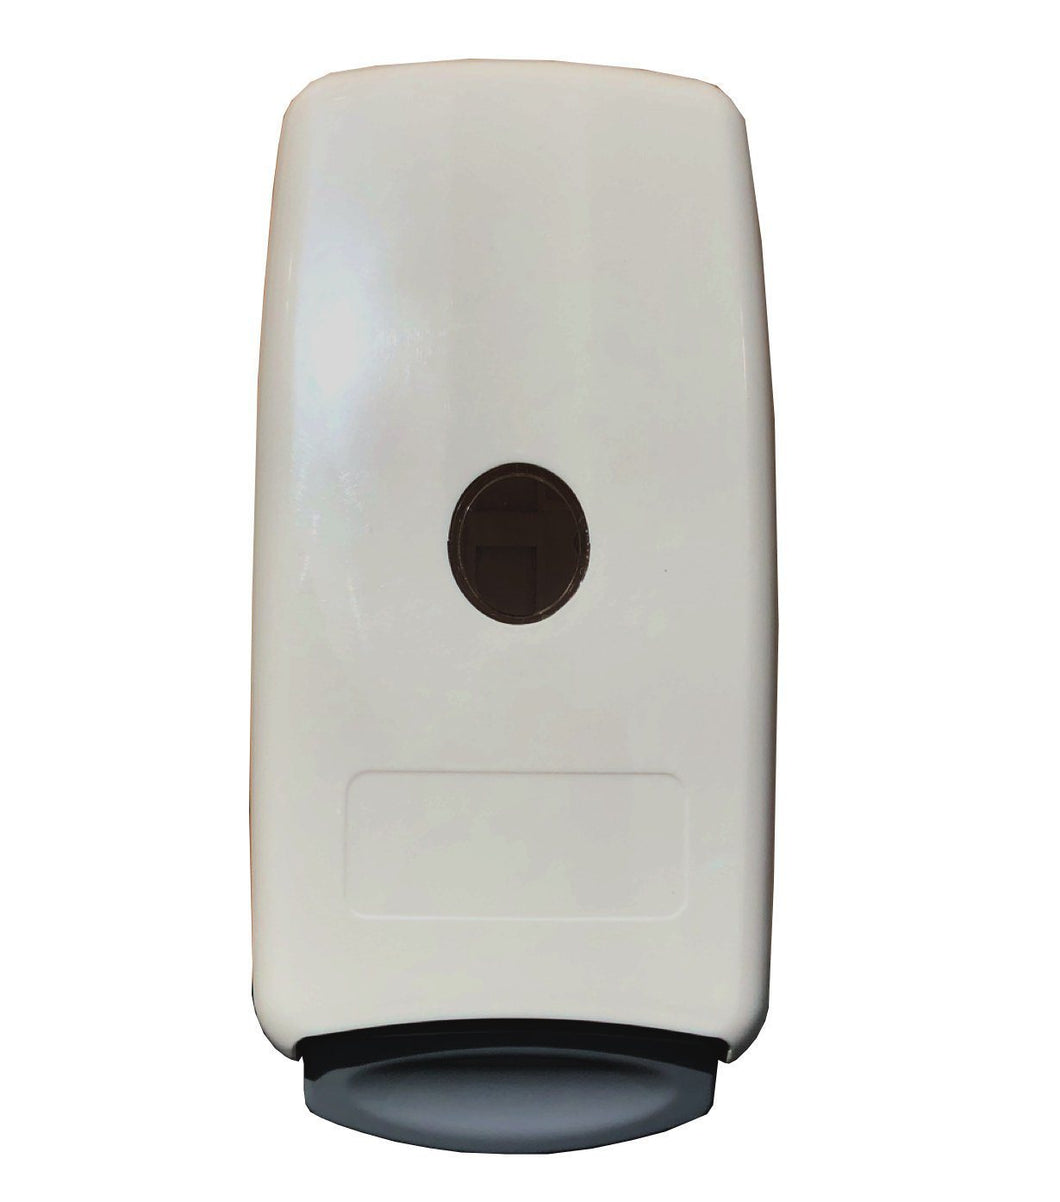 Dispenser for Foaming Hand Soap & Sanitizer, Wall-Mounted, White, for 1000 mL Bag Refills